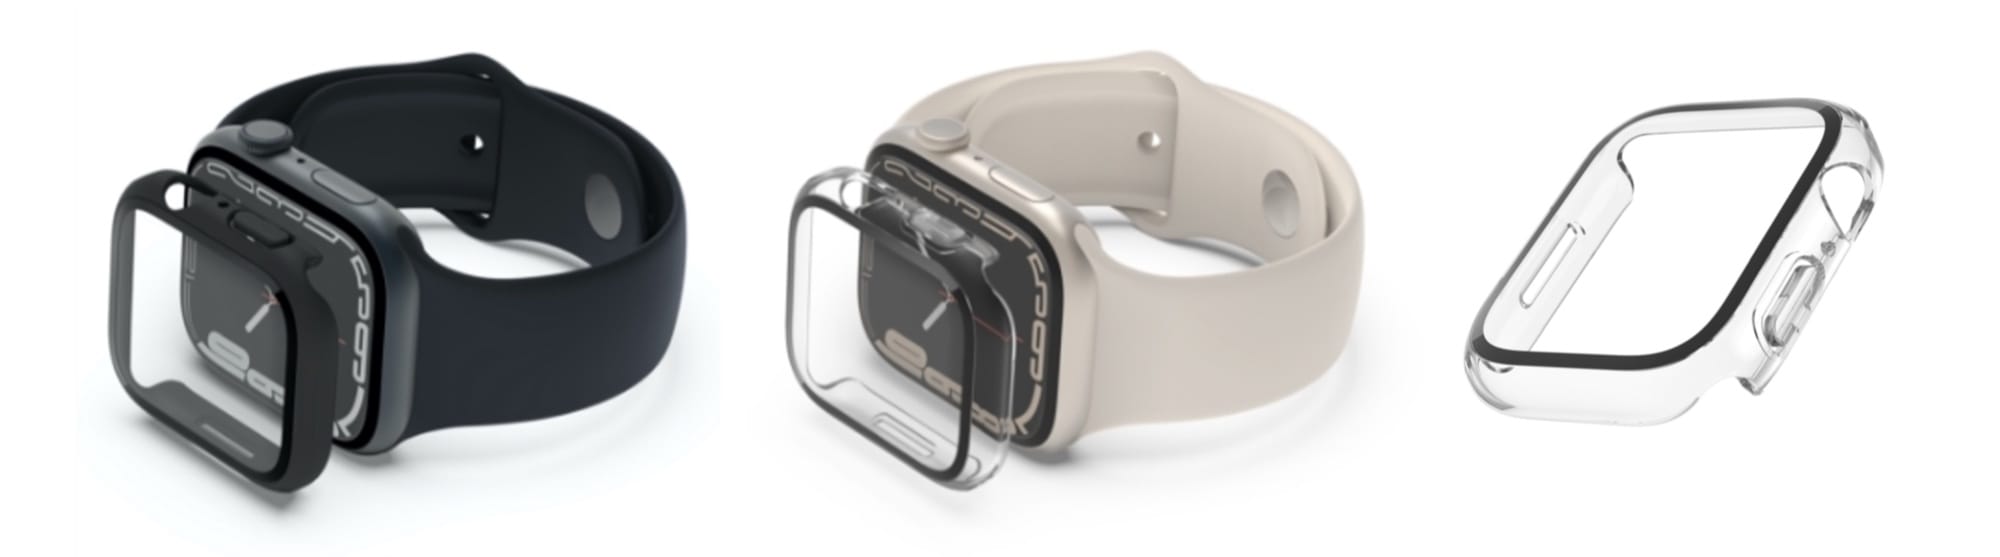 ベルキン、Apple Watch用スクリーンプロテクター一体型ケース発売